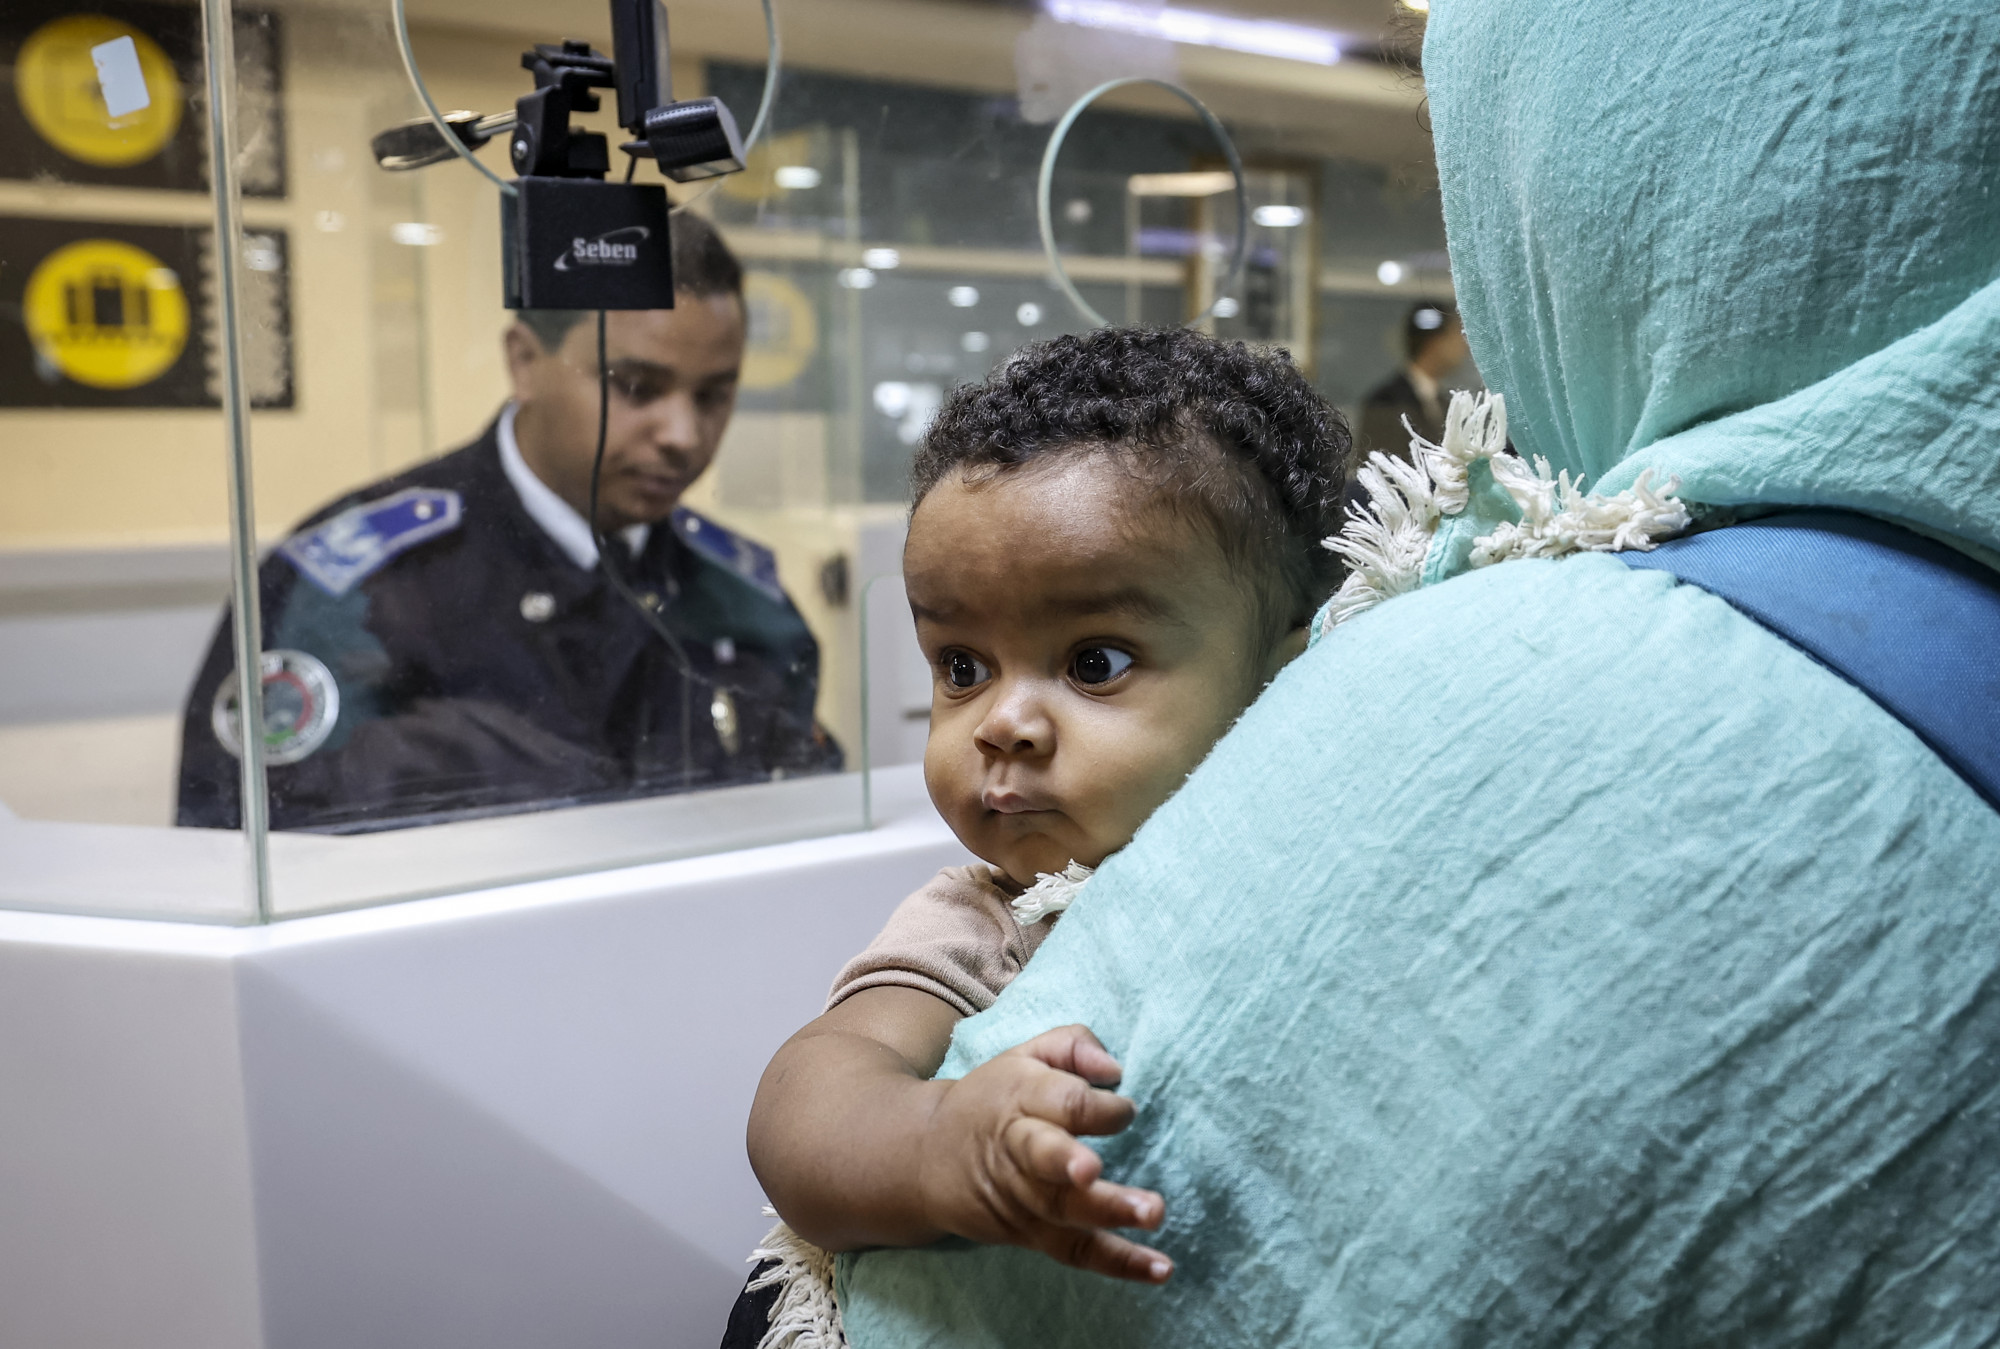 Végül terhesen, a hároméves kislányával, az éj leple alatt gyalogolt ki a harcok dúlta Szudánból egy nő, akinek a brit kormány egy éve nem bírálja el a vízumkérelmét